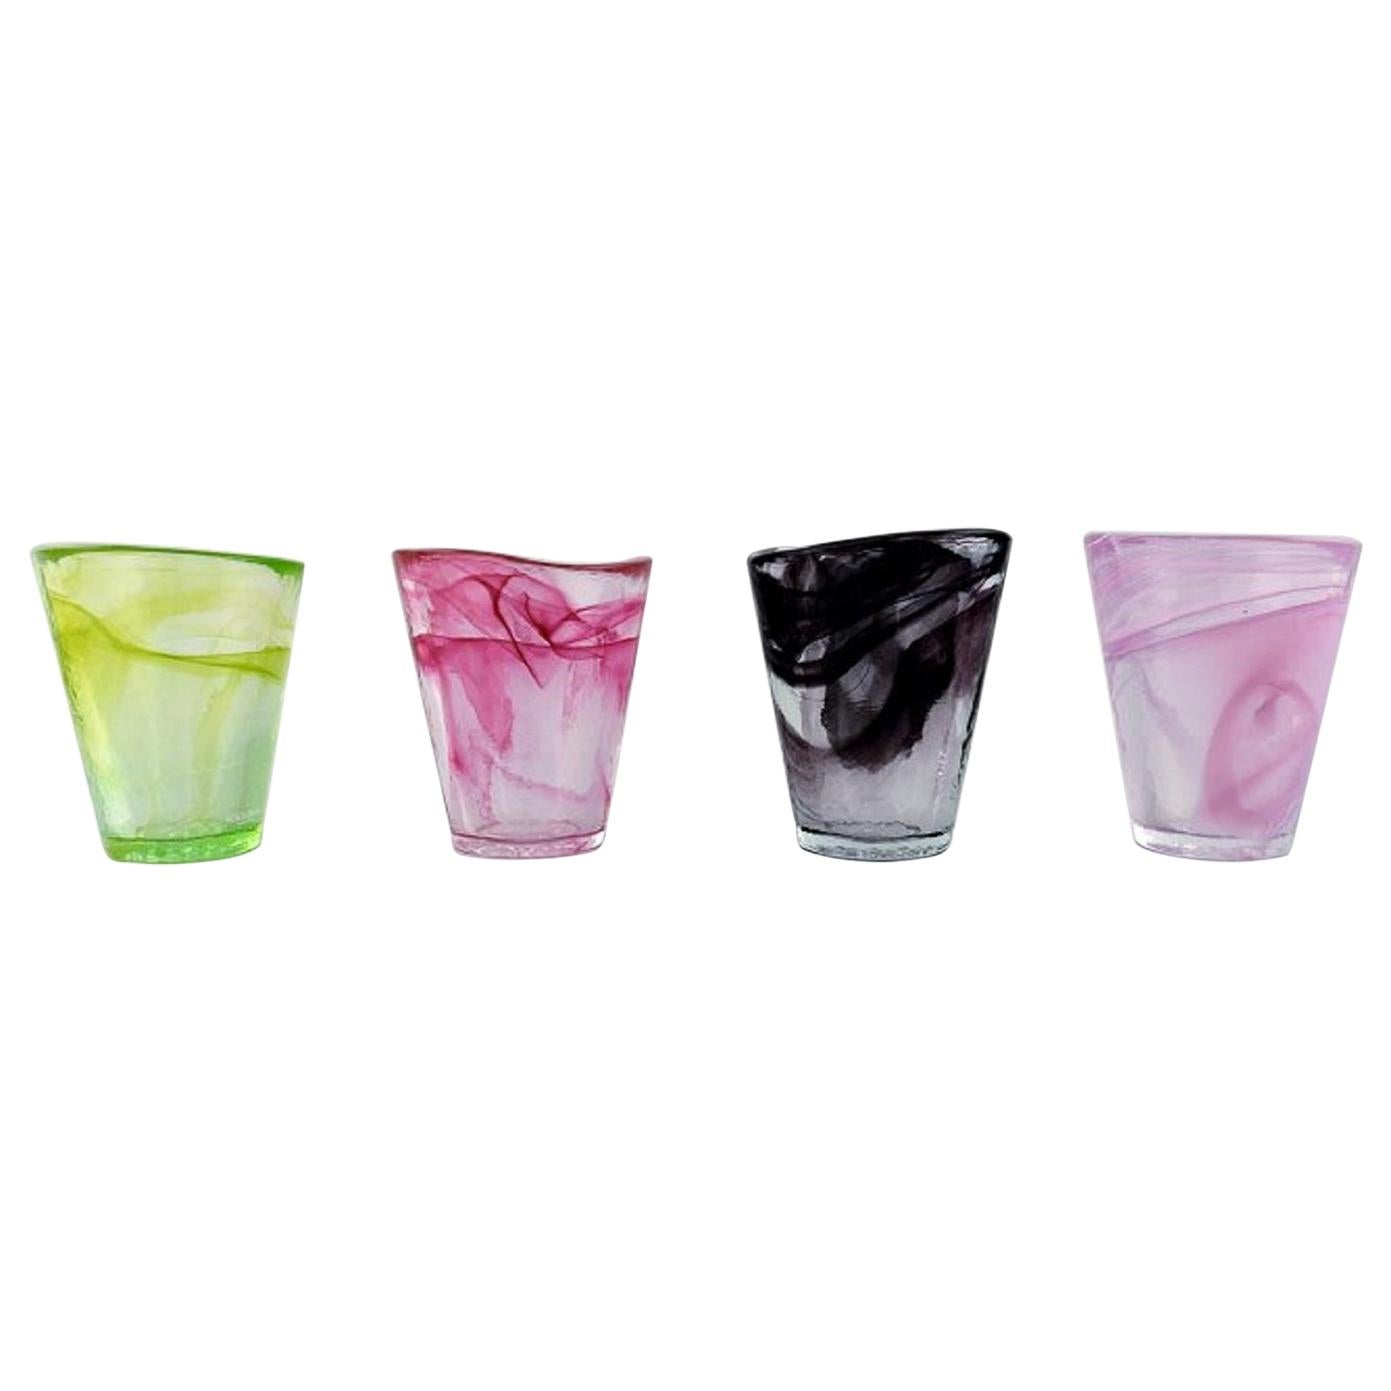 Ulrica Hydman Vallien for Kosta Boda, Four Glasses in Colored Art Glass